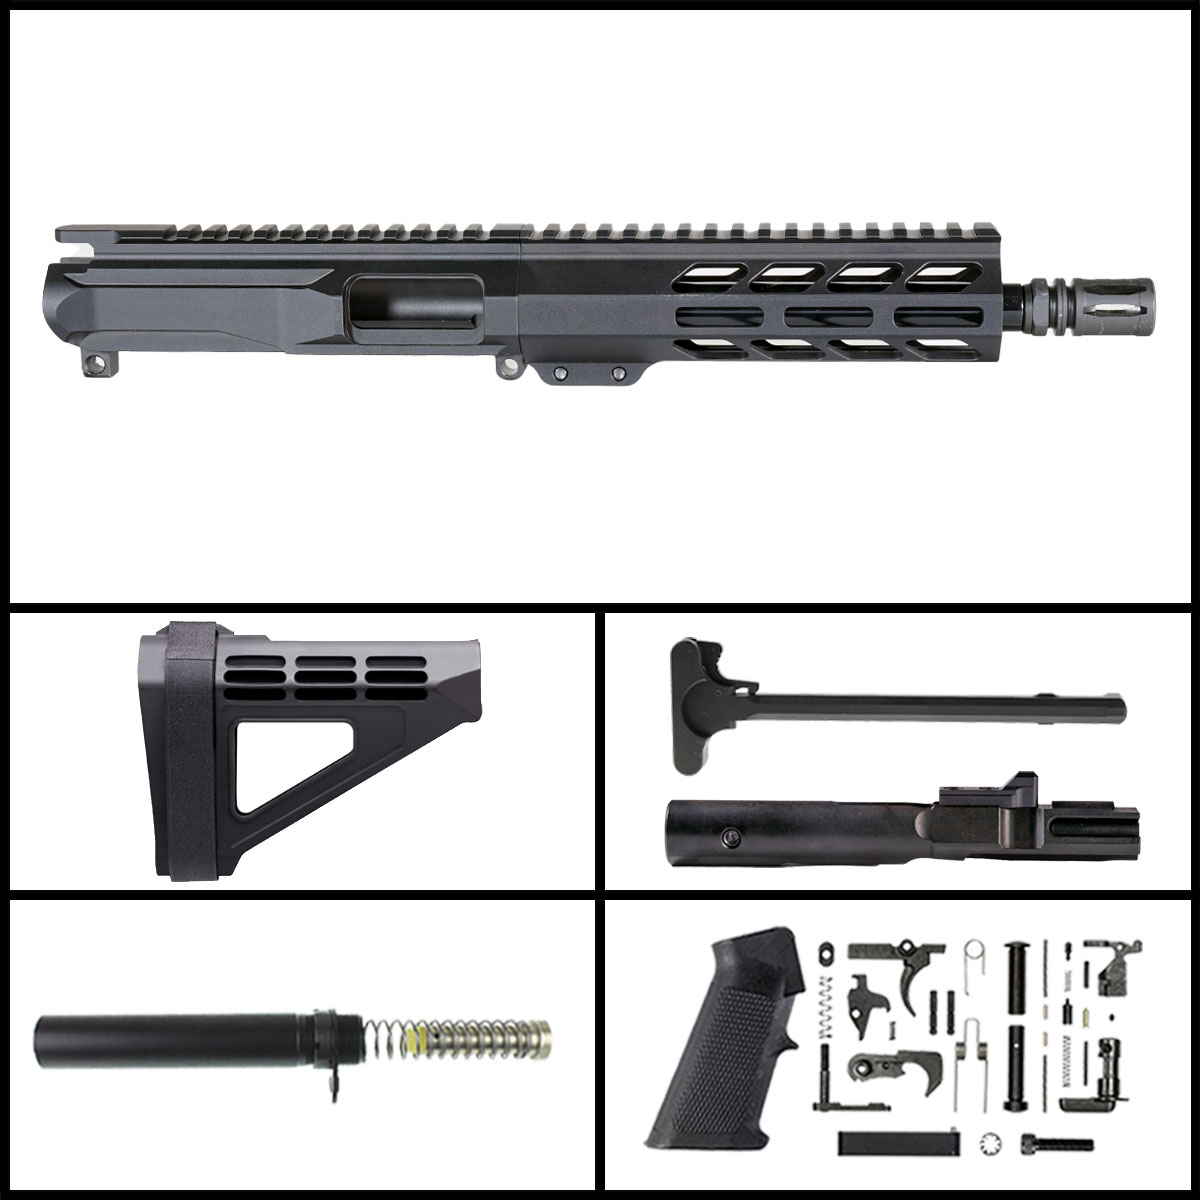 DD 'Eternal Night Gen 2' 8.5-inch AR-15 9mm Nitride Pistol Full Build Kit